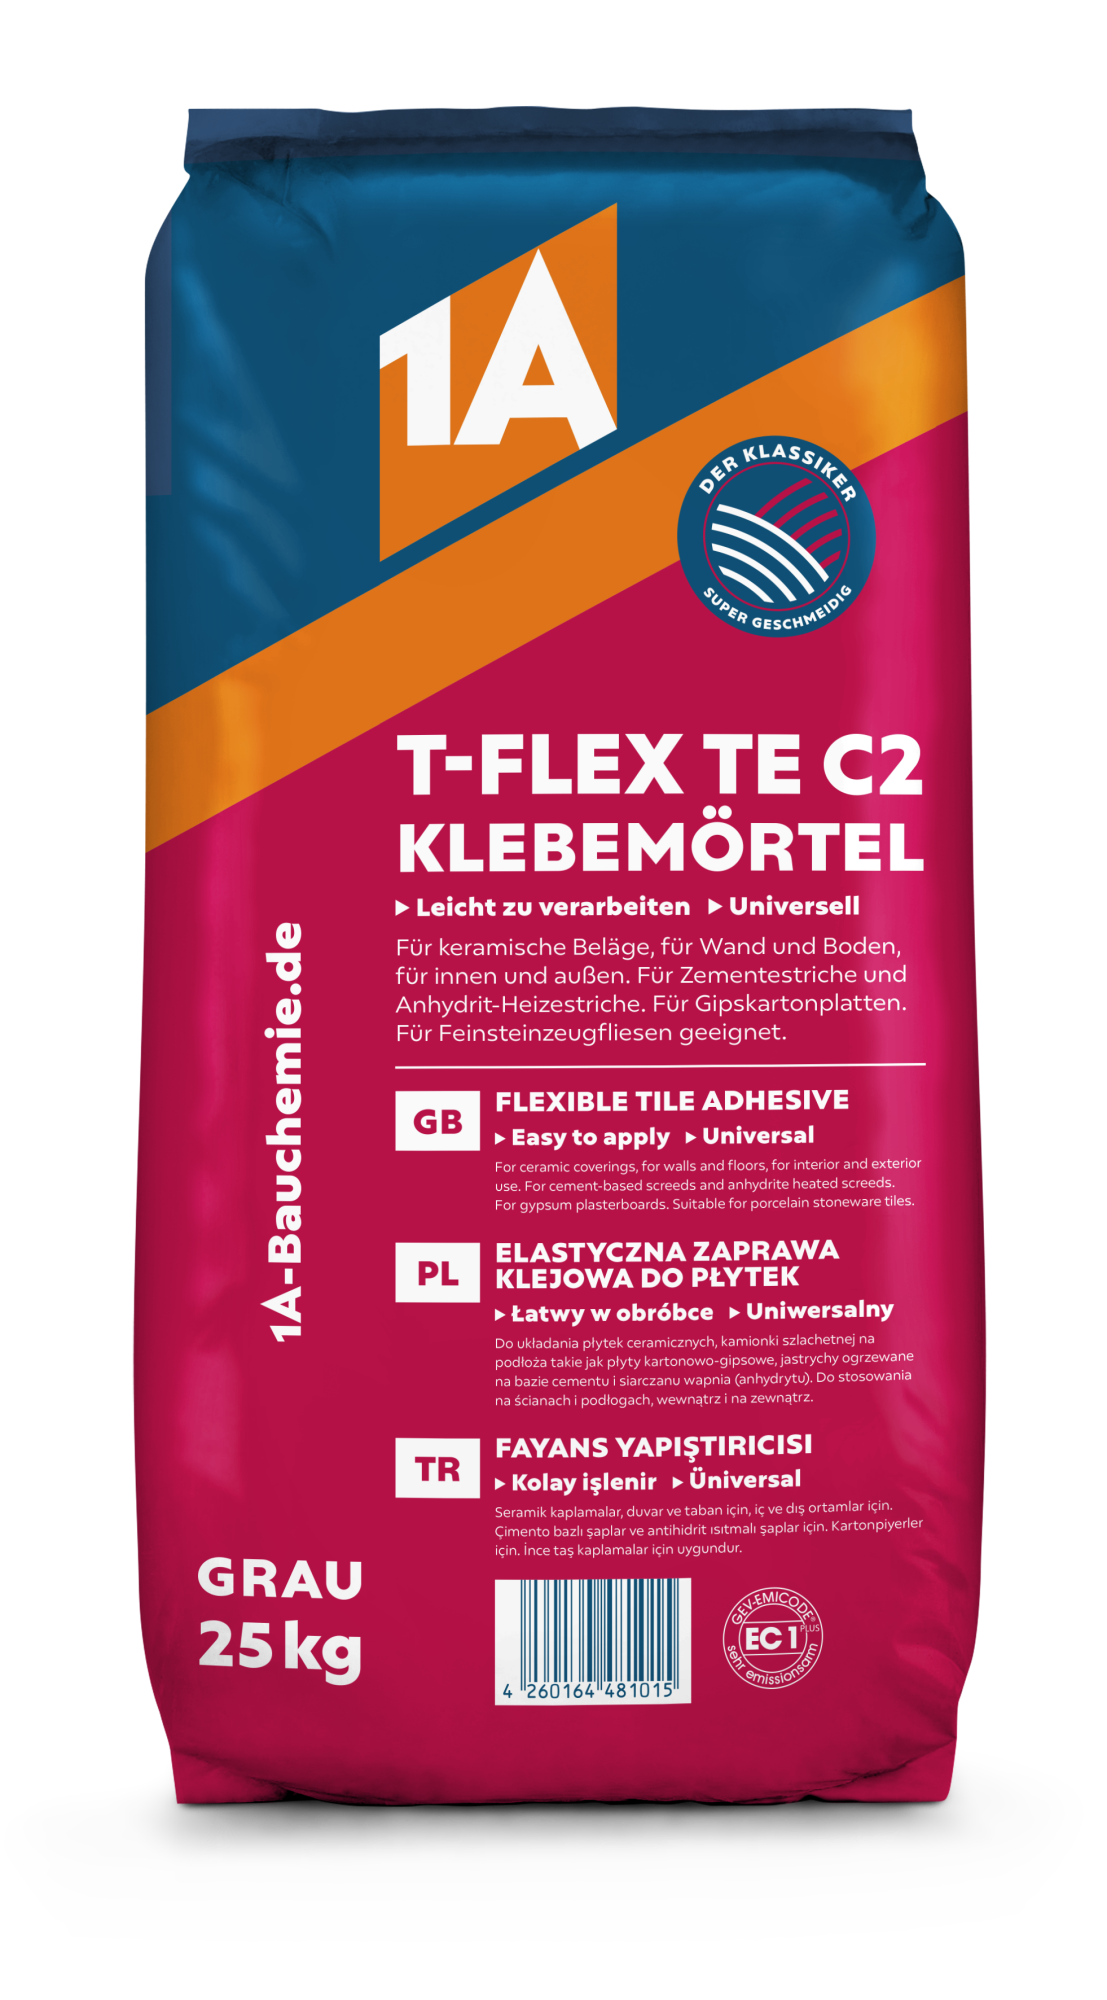 1A T-FLEX TE C2 Klebemörtel